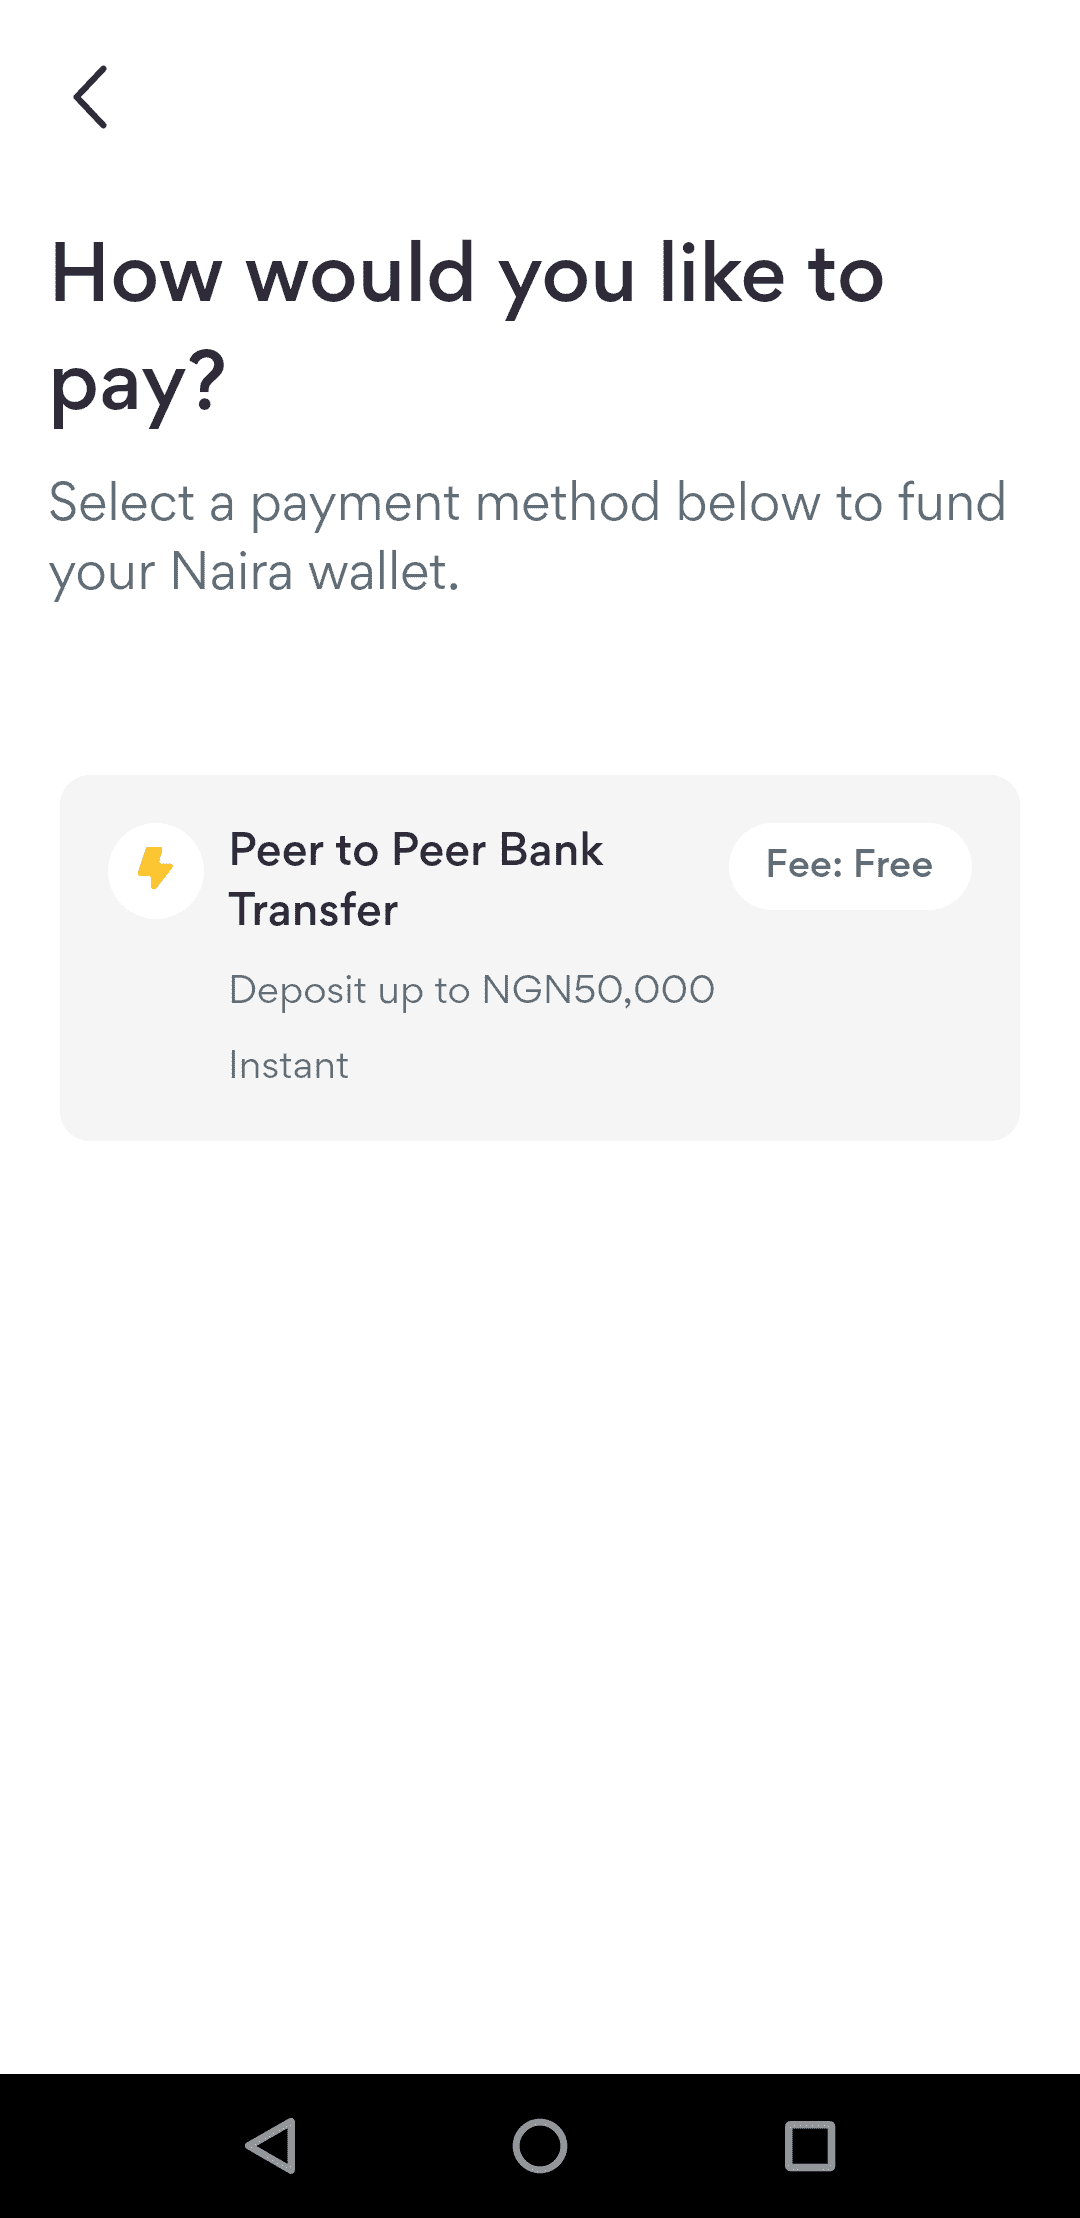 Peer to Peer Bank Transfer